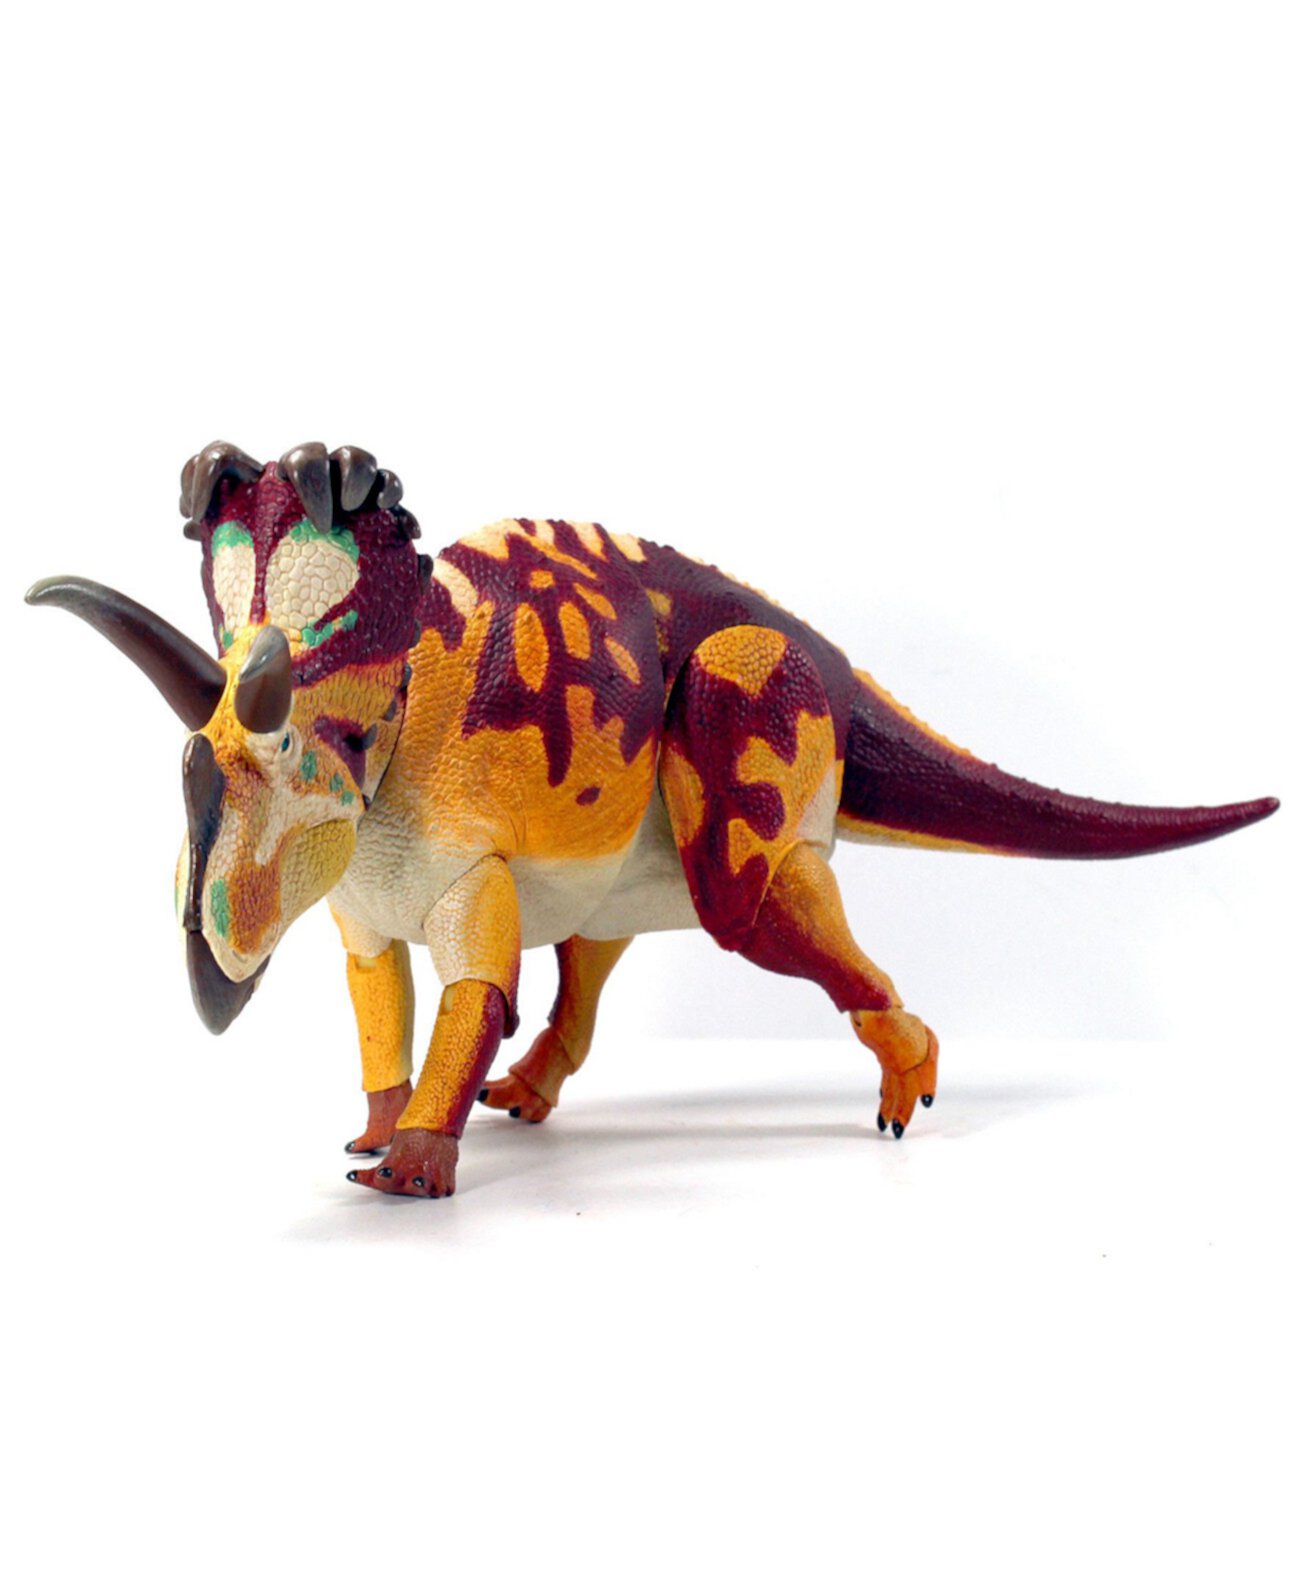 Фигурка динозавра Wendiceratops Pinhornensis Beasts of the Mesozoic